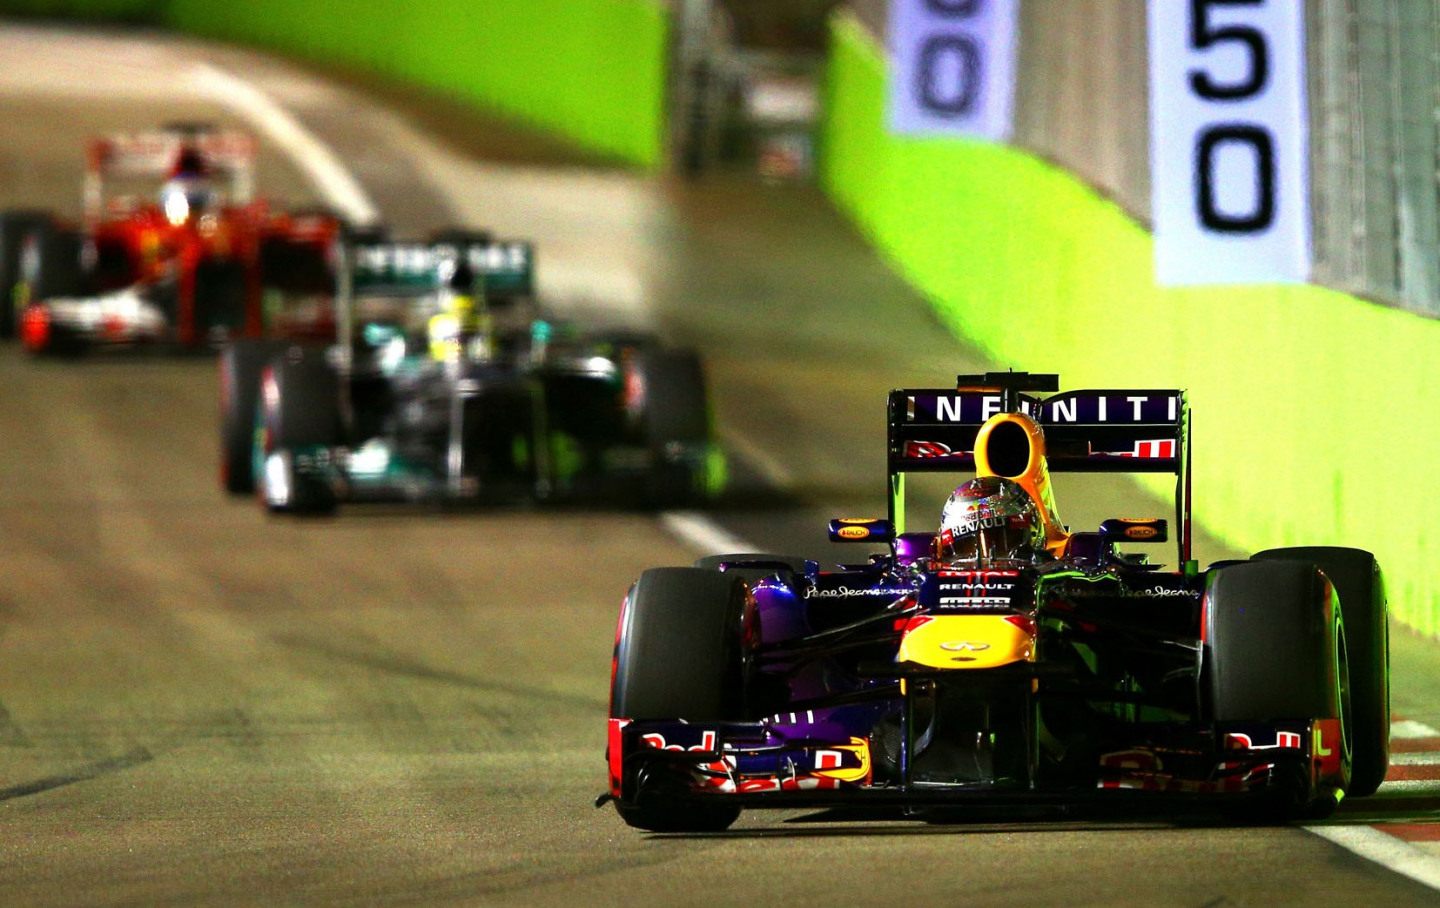 В более спокойной обстановке в Red Bull Racing Феттелю было достаточно просто пилотировать © Red Bull